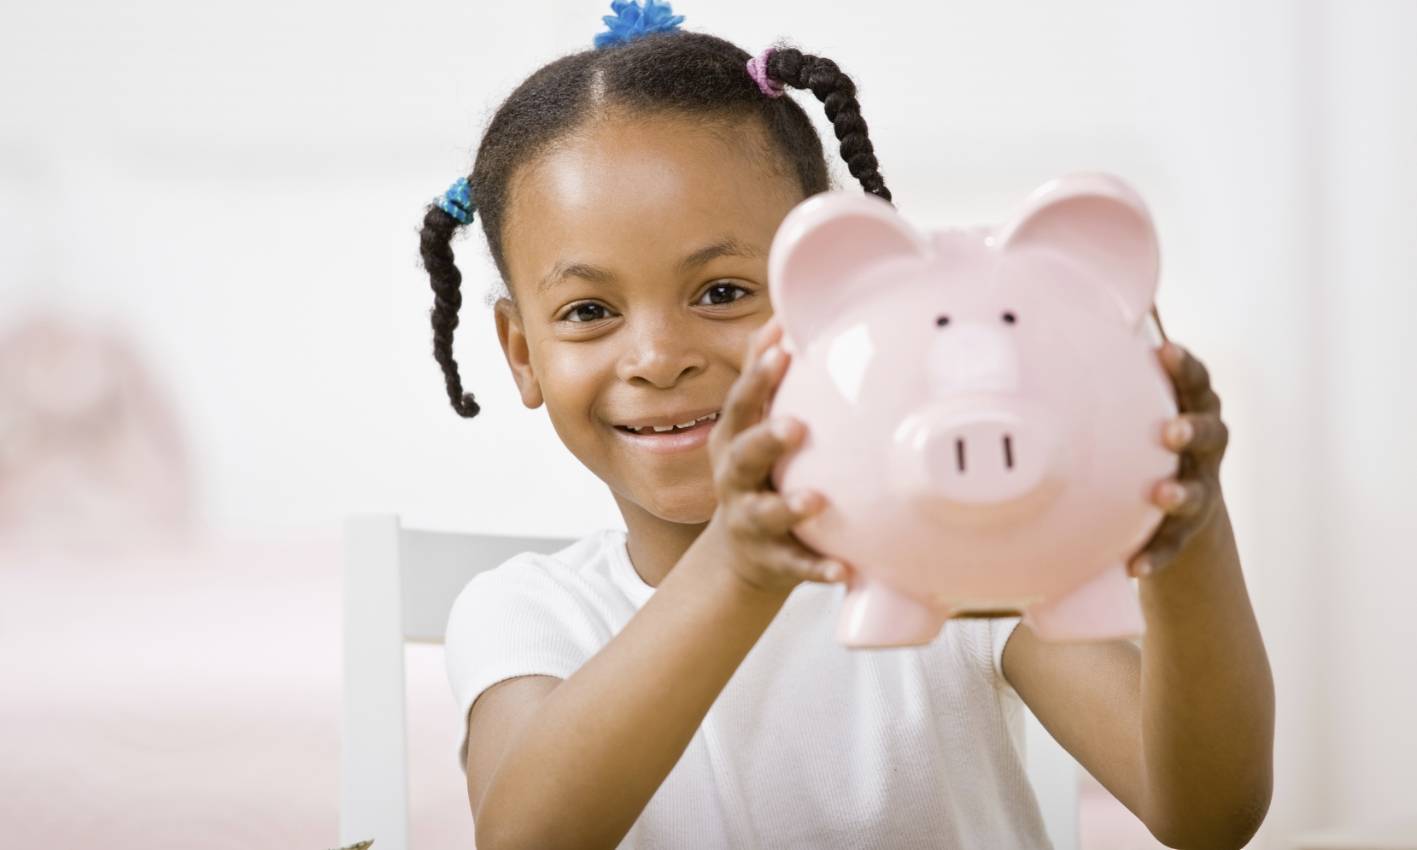 Adopem imparte educación financiera a 8,000 niños y adolescentes